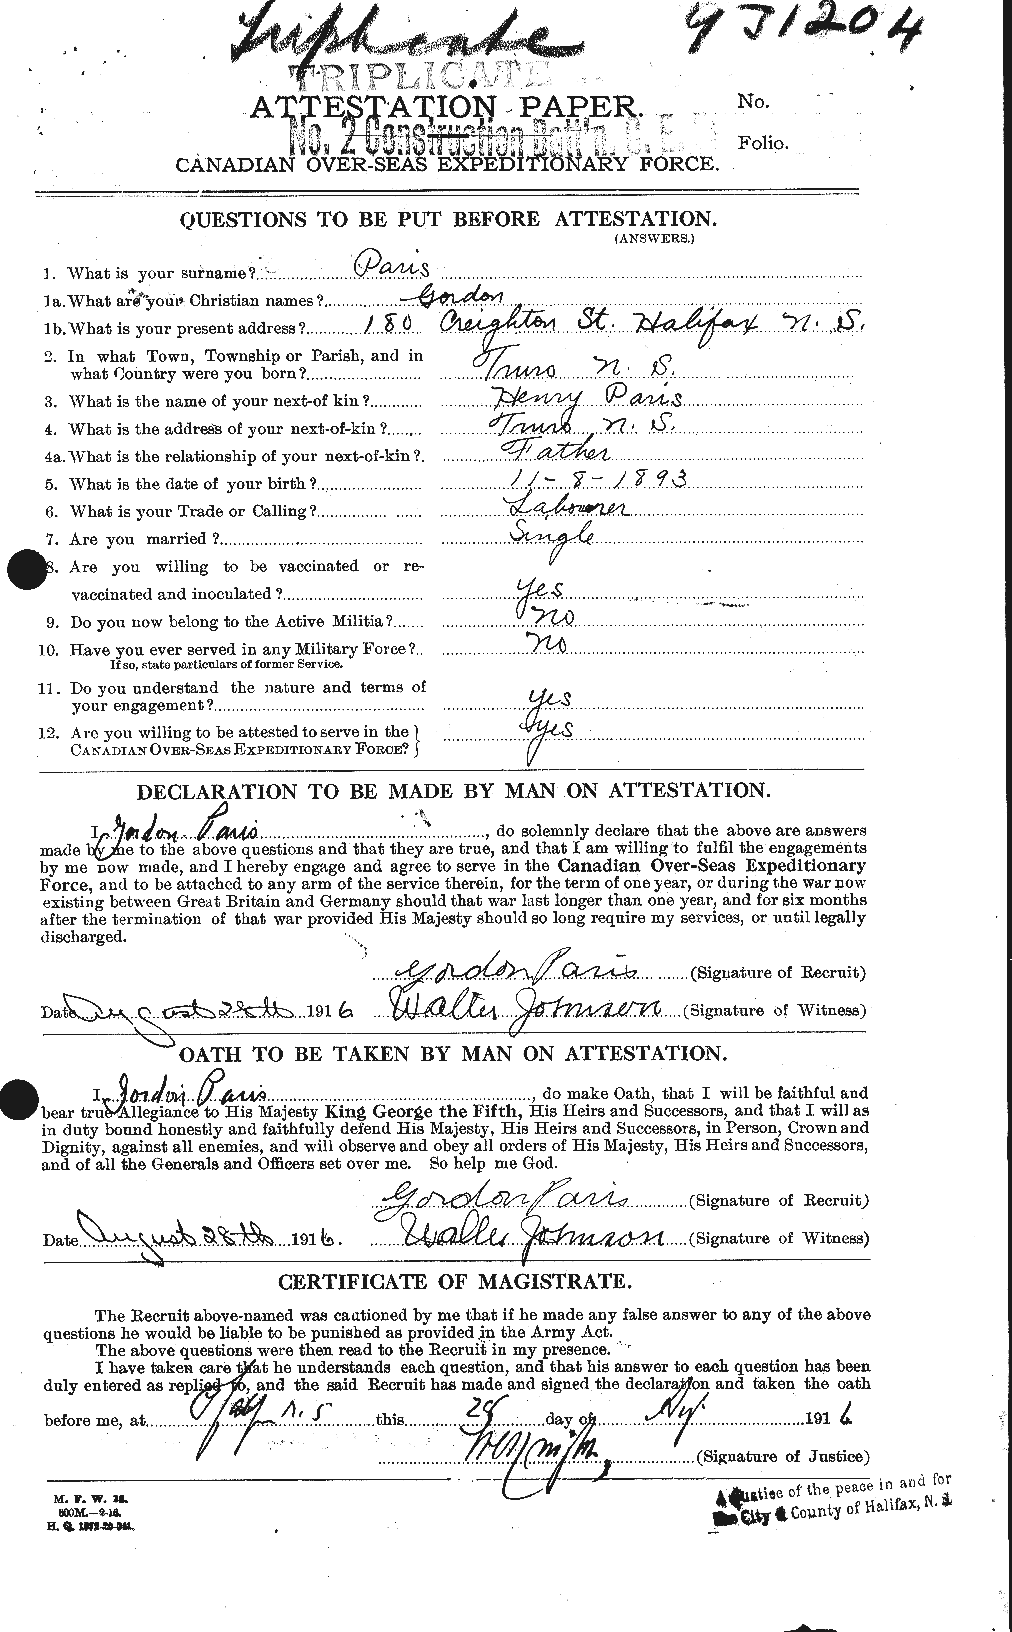 Dossiers du Personnel de la Première Guerre mondiale - CEC 564595a